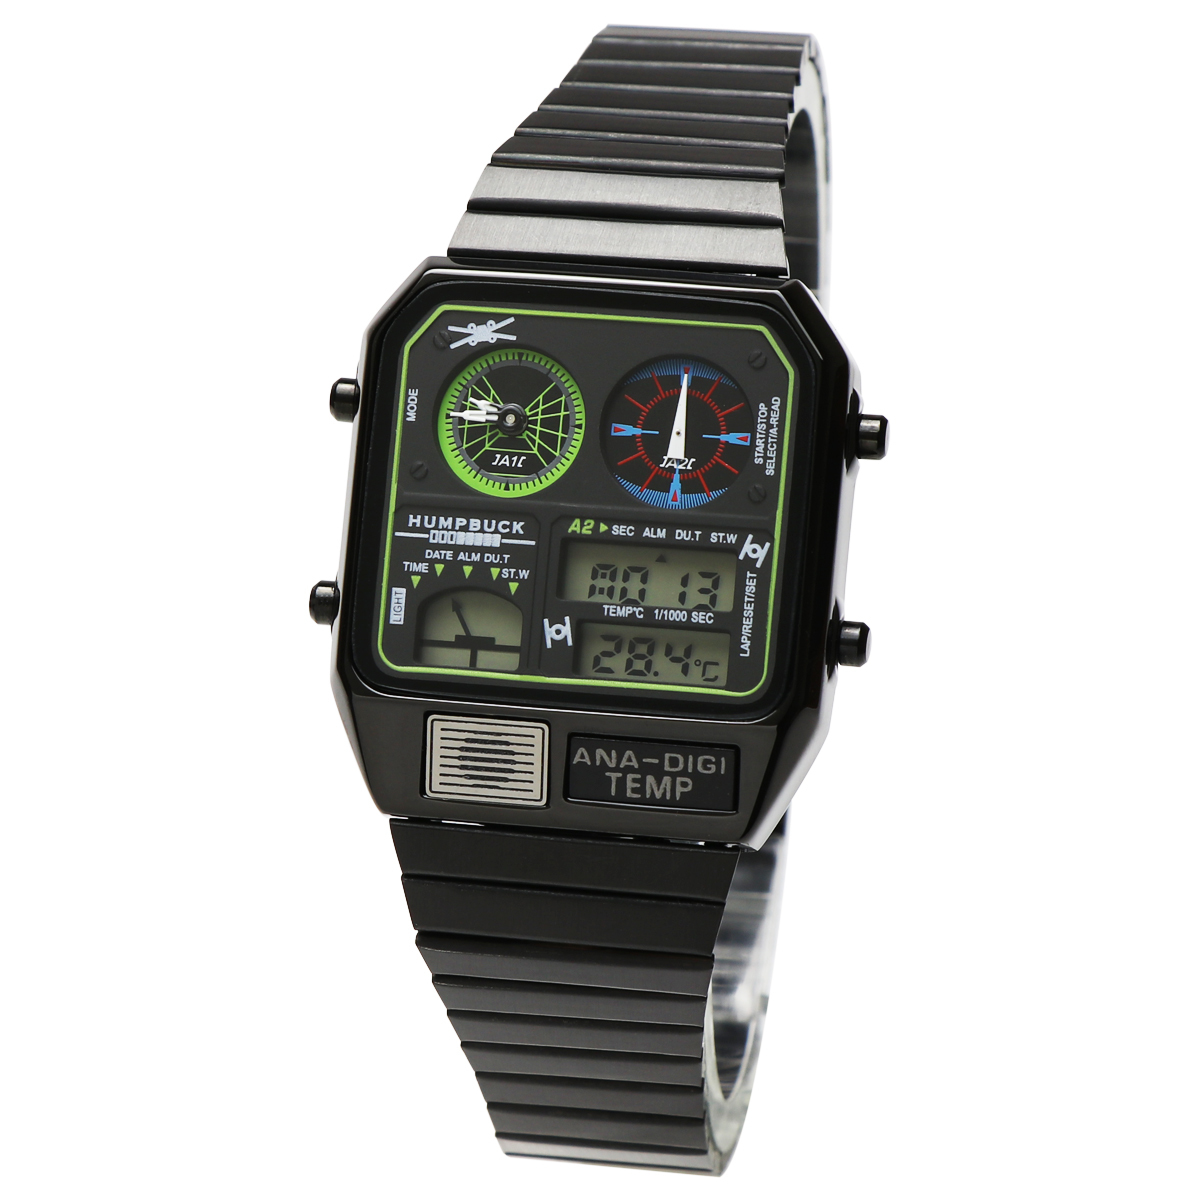 6ヶ月保証 未使用 アウトレット アナデジテンプ ブラック グリーン ANA-DIGI TEMP 6 デジアナ 温度計 腕時計 復刻デザイン メンズ 男性_画像1